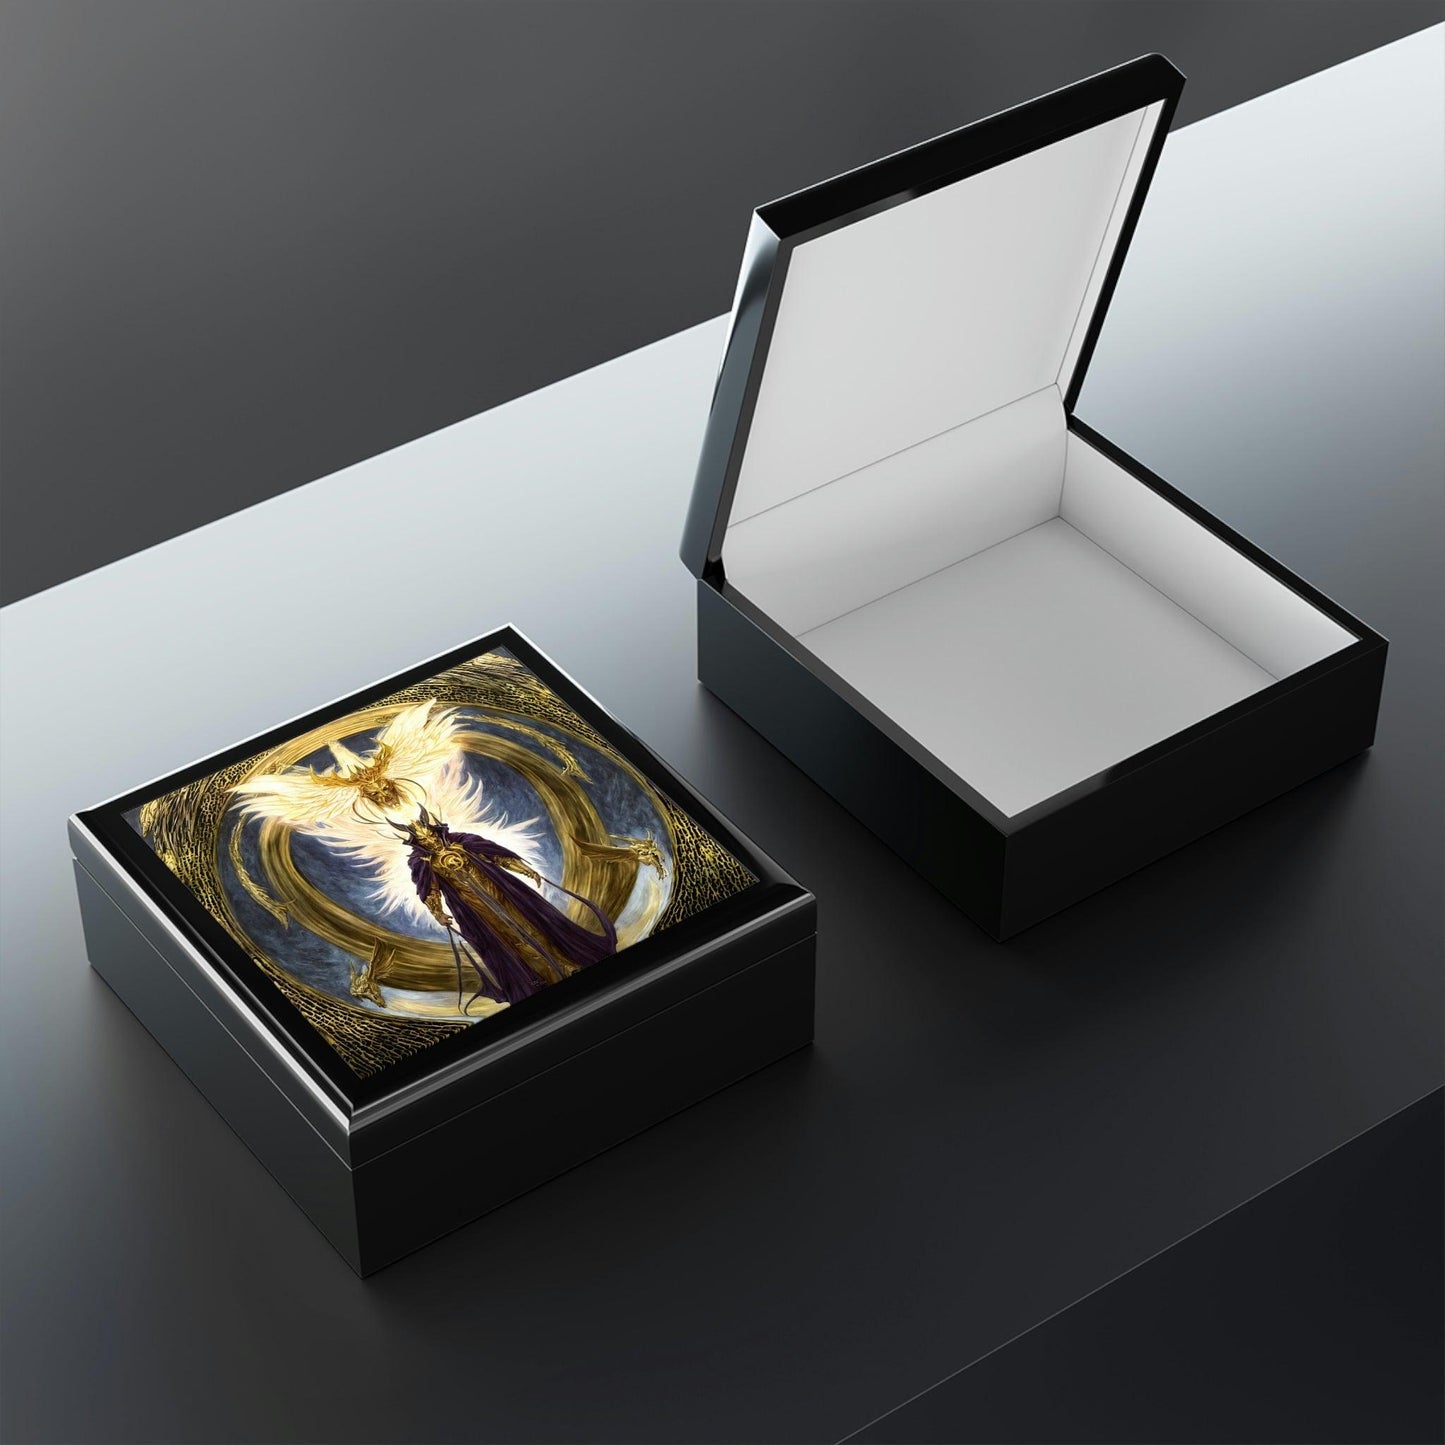 Lucifers-Jewelry-Box-untuk-menyimpan-azimat-dan-cincin-3